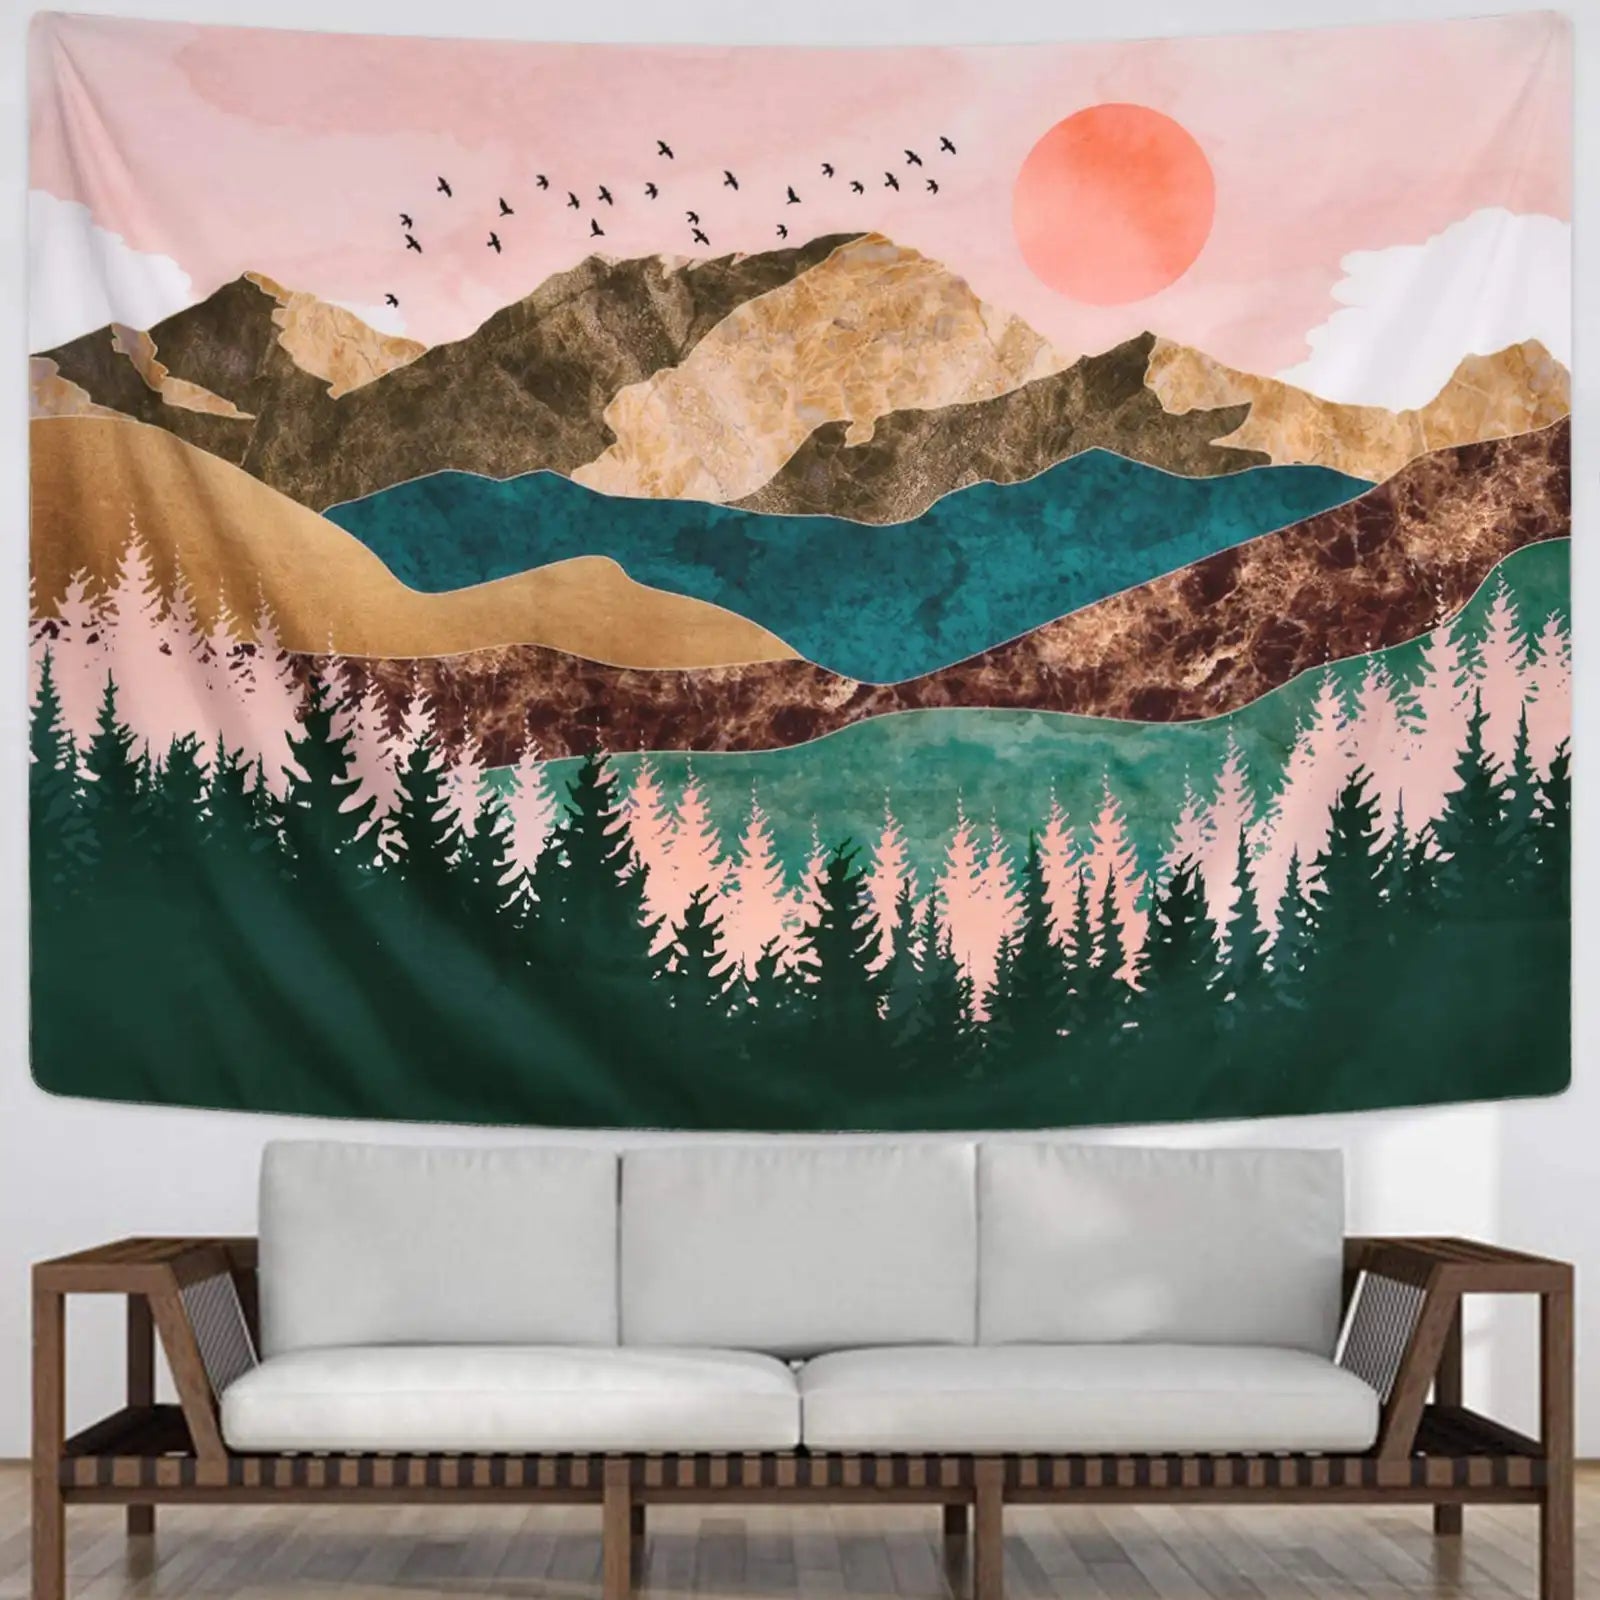 Tapiz de montaña, tapiz de árbol forestal, tapiz de puesta de sol, tapiz de paisaje natural para colgar en la pared de la habitación 